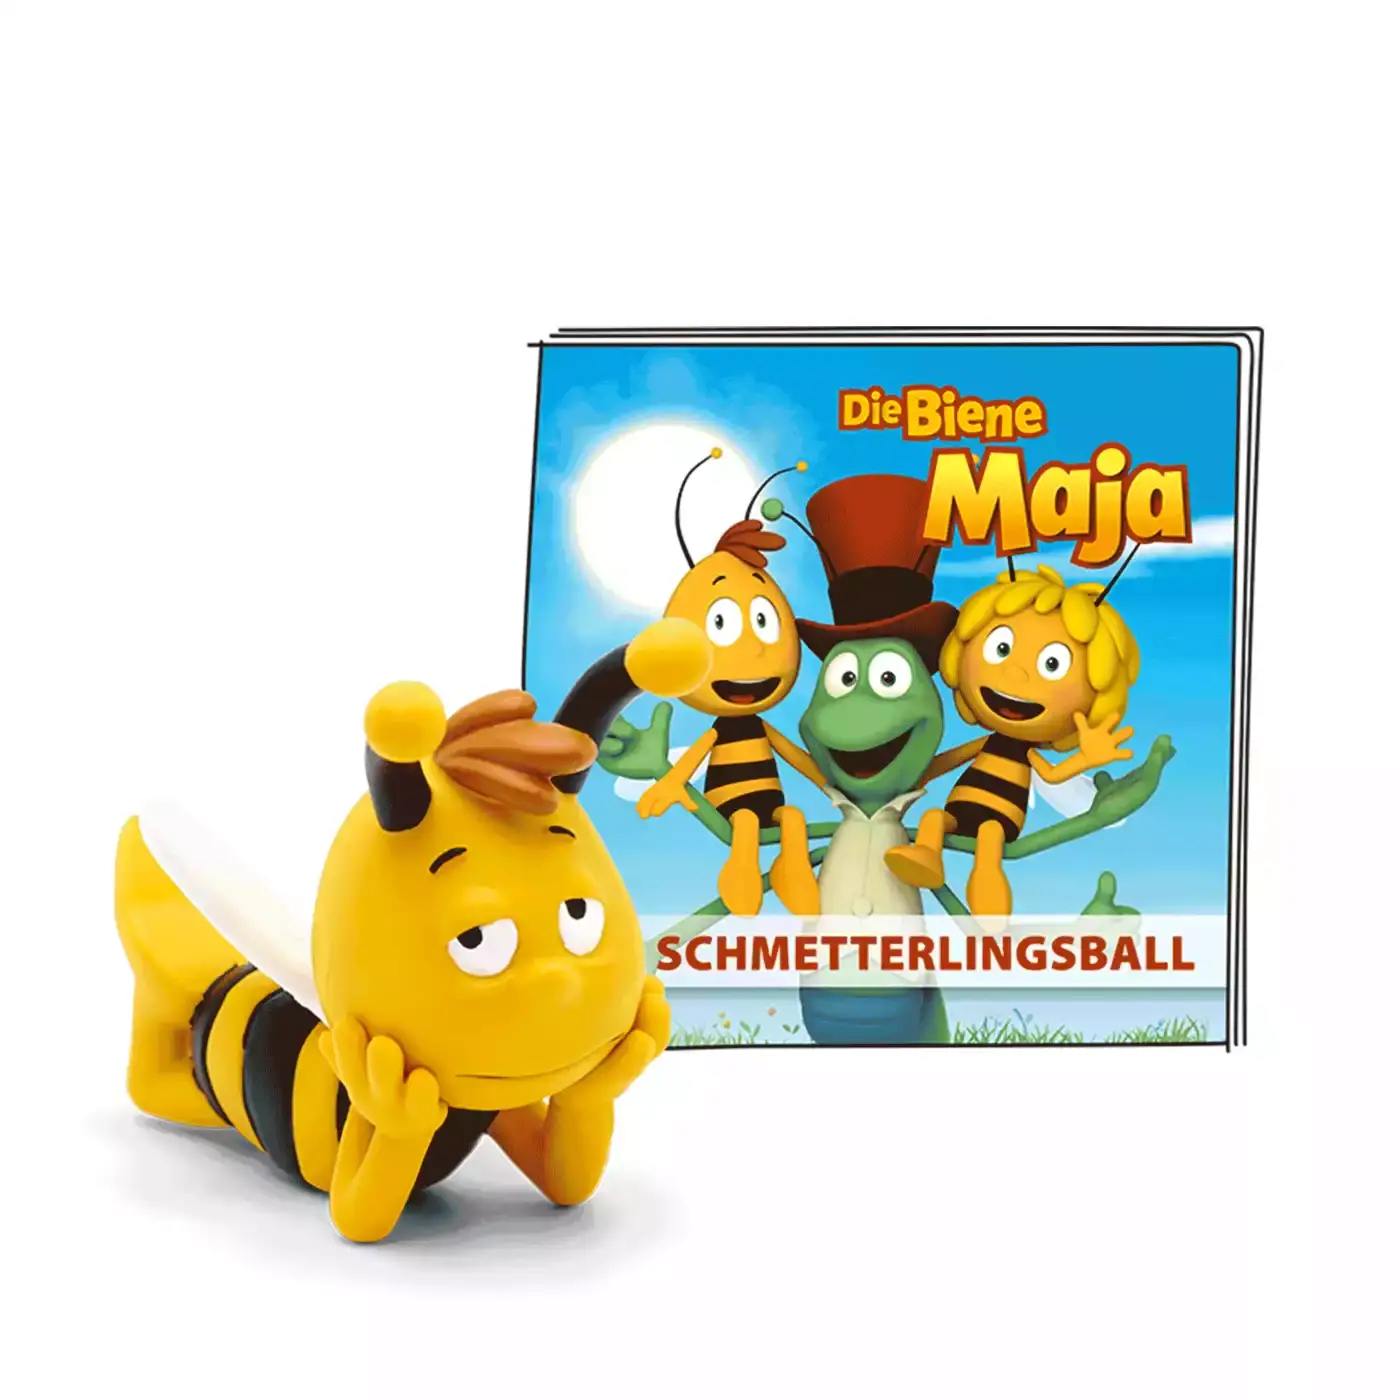 Die Biene Maja - Der Schmetterlingsball tonies 2000578647902 1